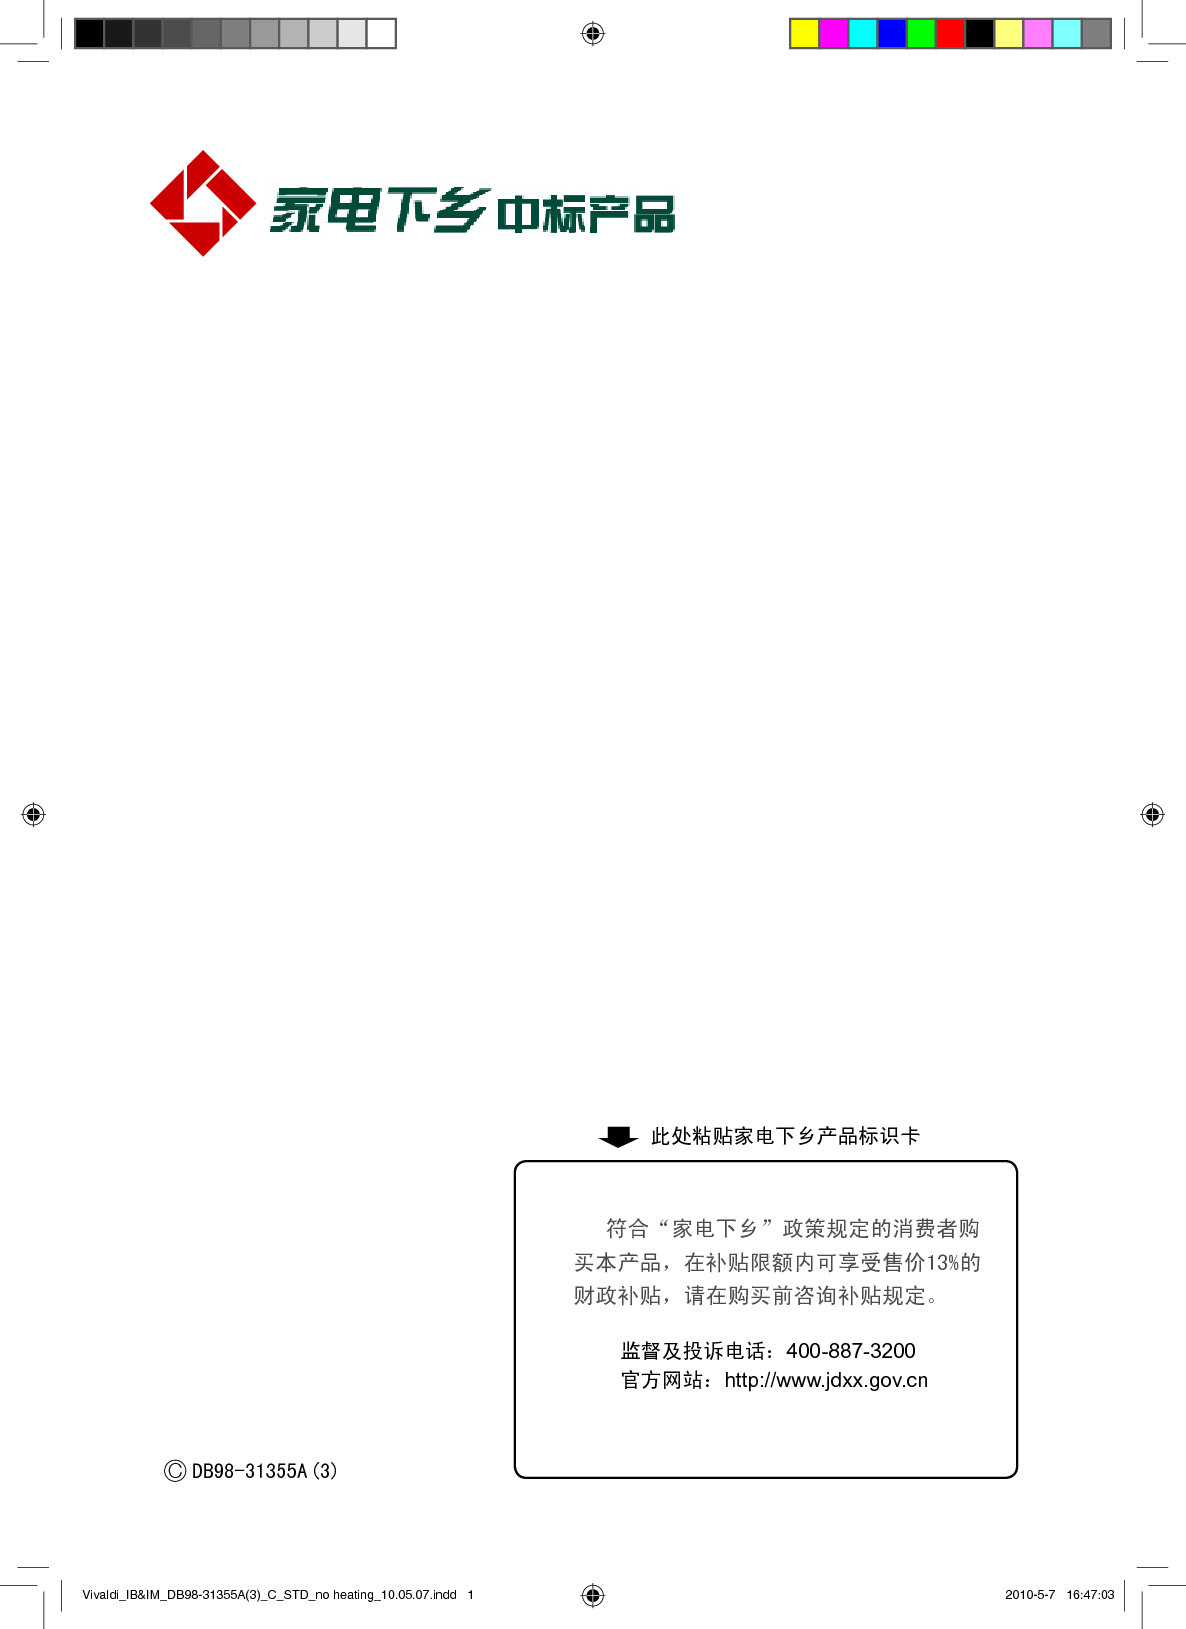 三星 Samsung KF-25GW/URZ 安装使用说明书 封面